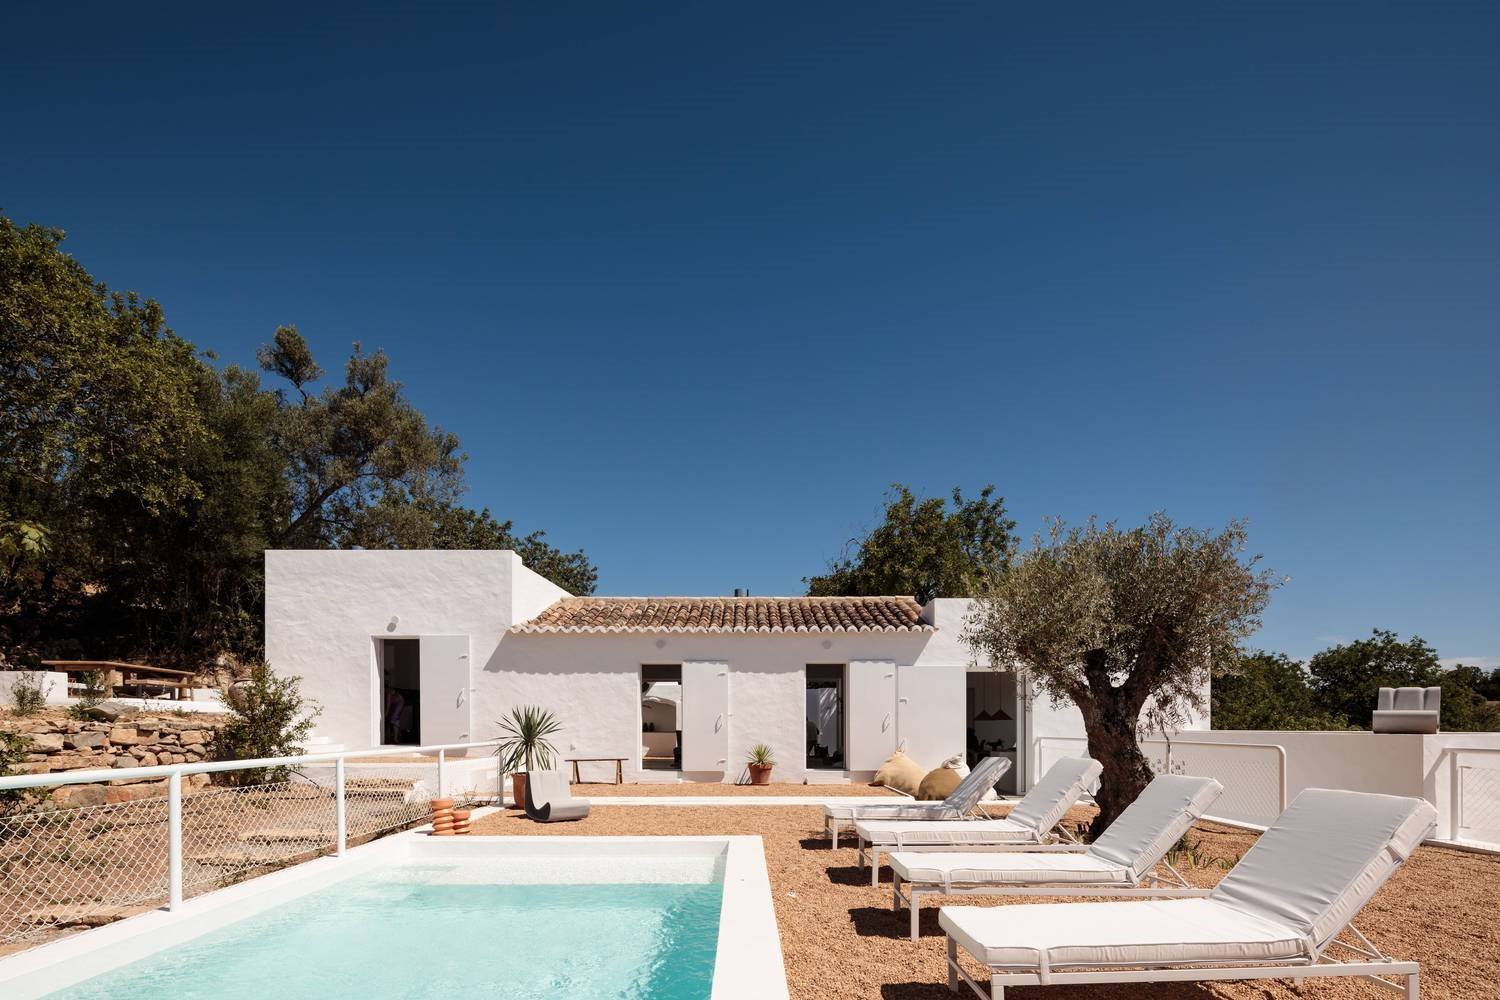 casa-de-vacaciones-en-el-algarve-en-portugal-con-fachada-e-interiores-de-color-blanco-piscina-con-tumbonas 210de561 1500x1000